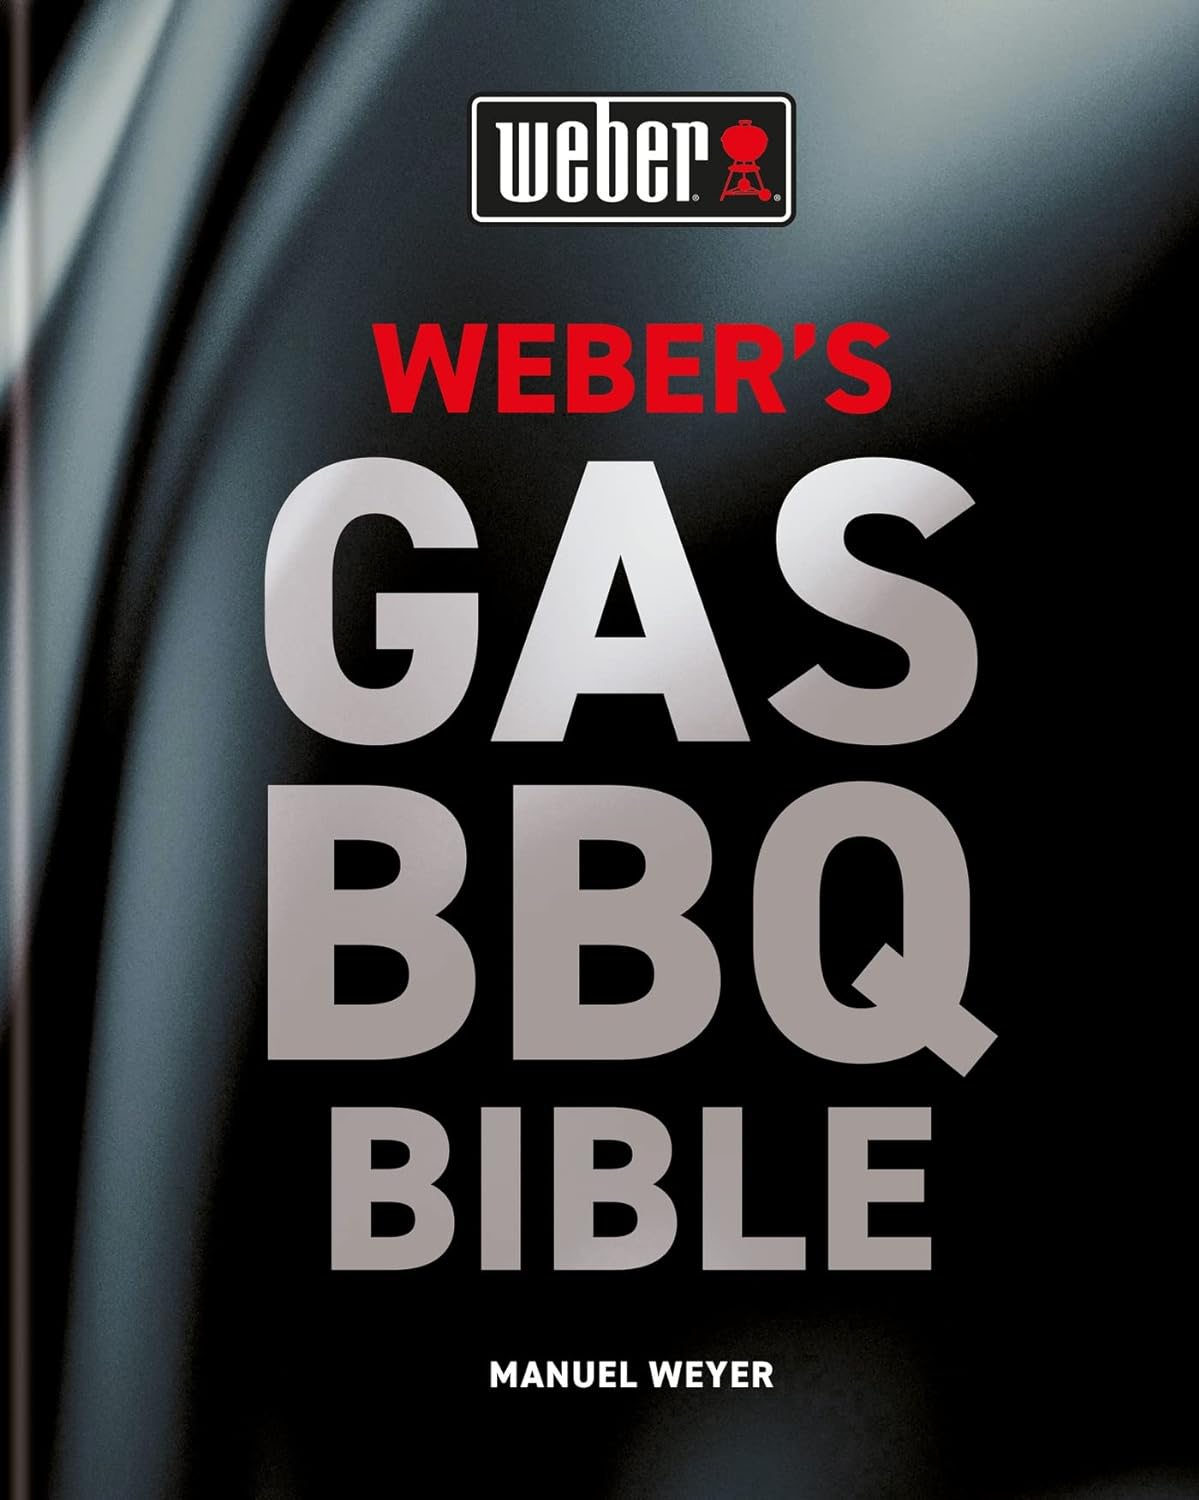 Weber's Gas BBQ Bible